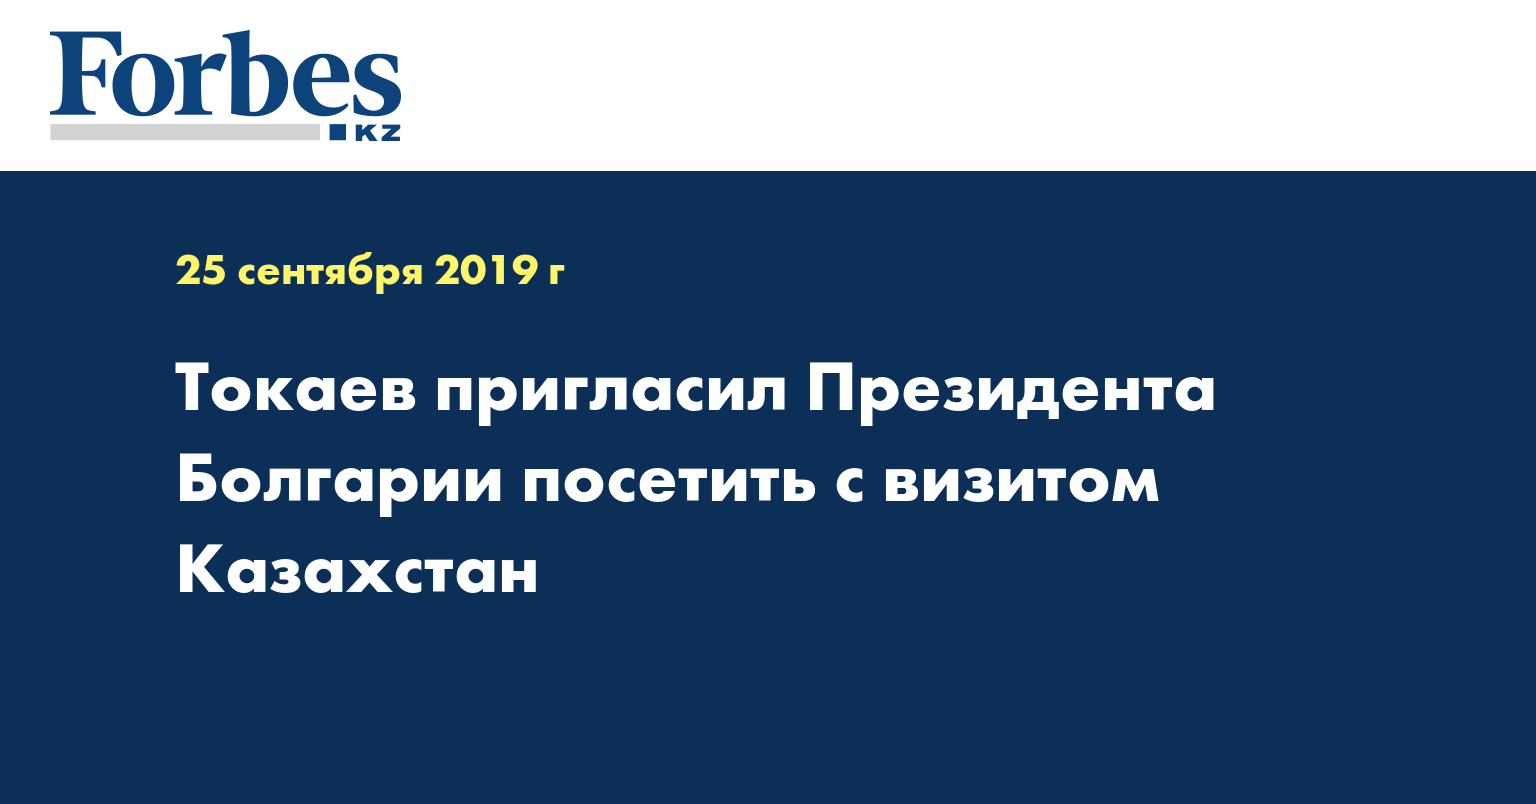 Токаев пригласил Президента Болгарии посетить с визитом Казахстан